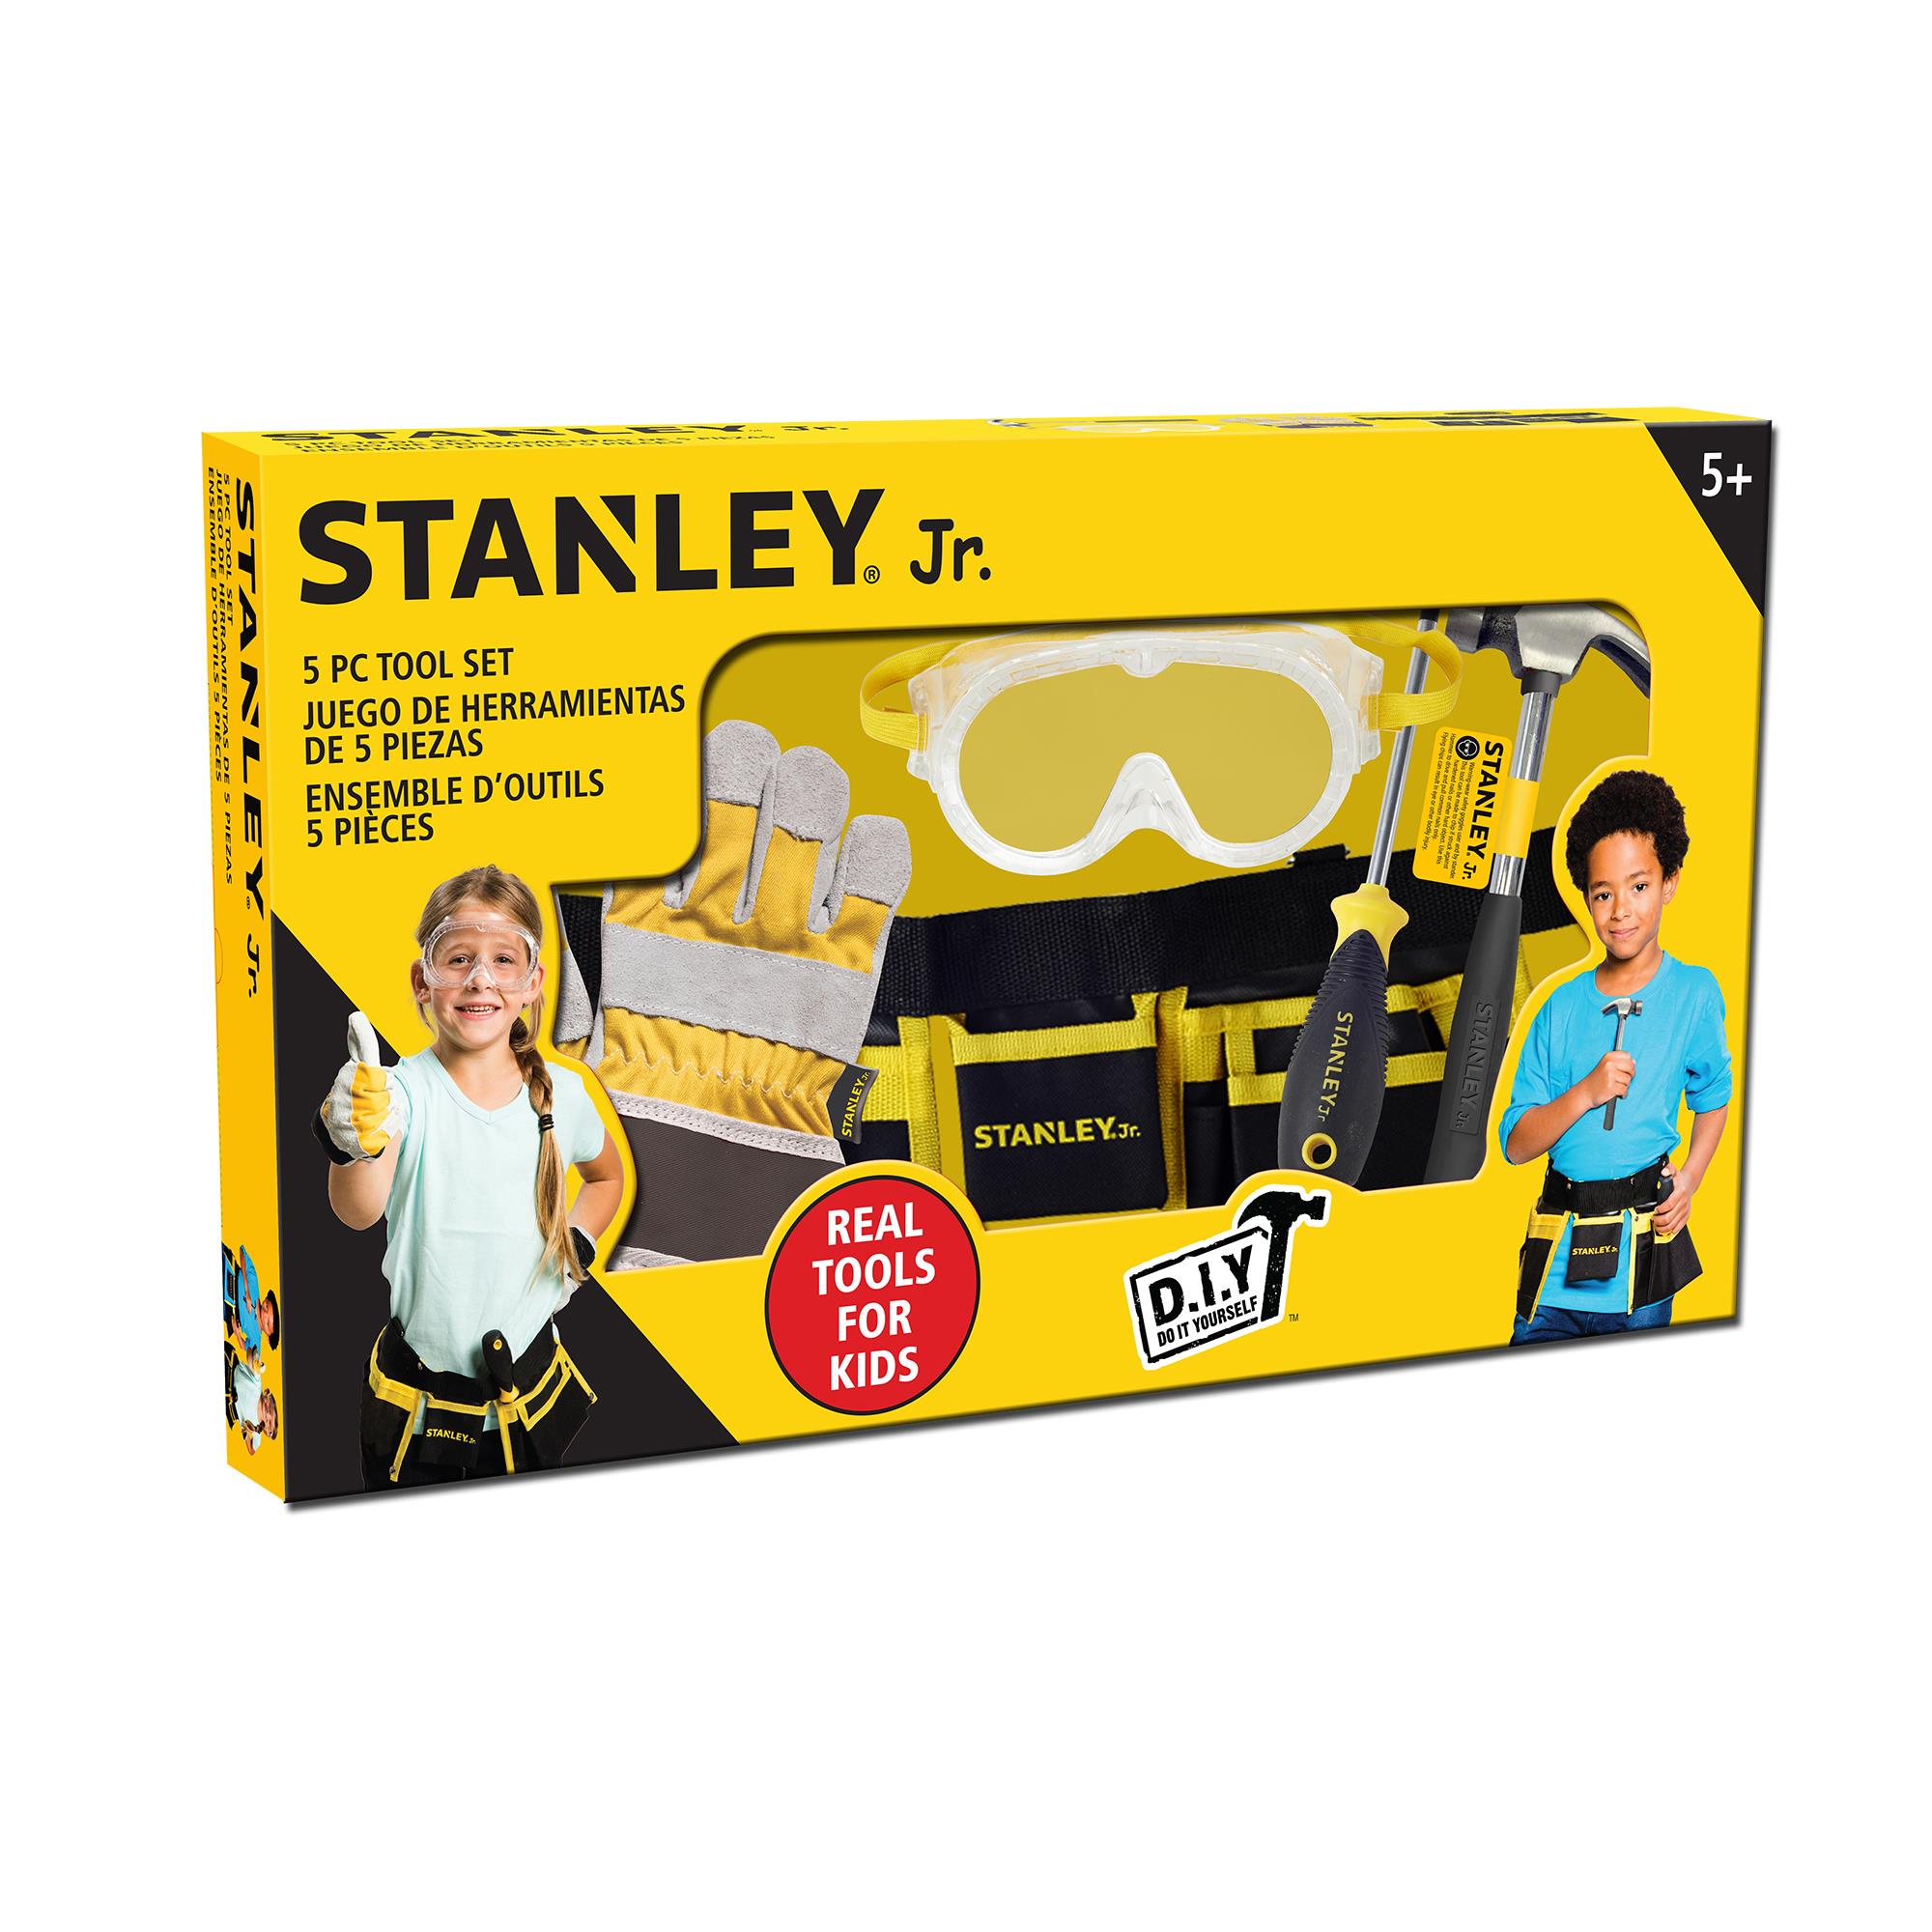 Zestaw akcesoriów narzędziowych dla dzieci Stanley Jr.